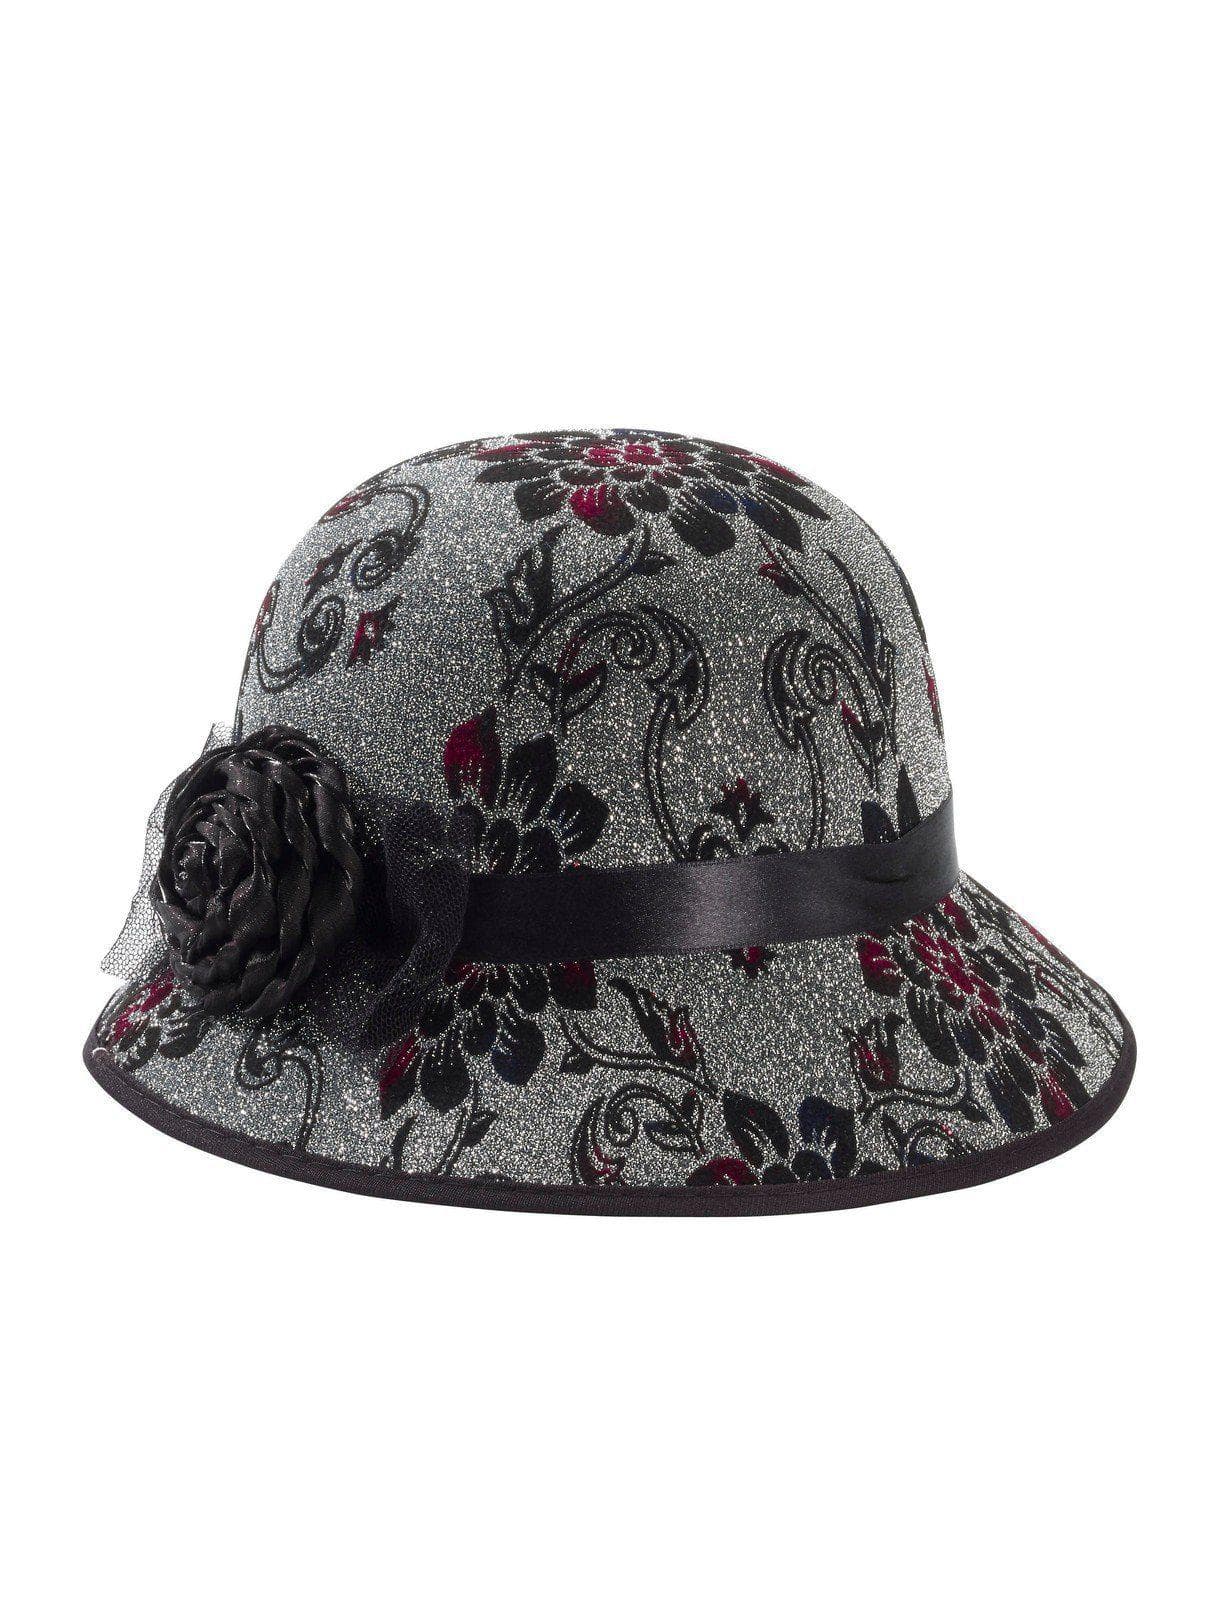 Floral Flapper Hat - costumes.com